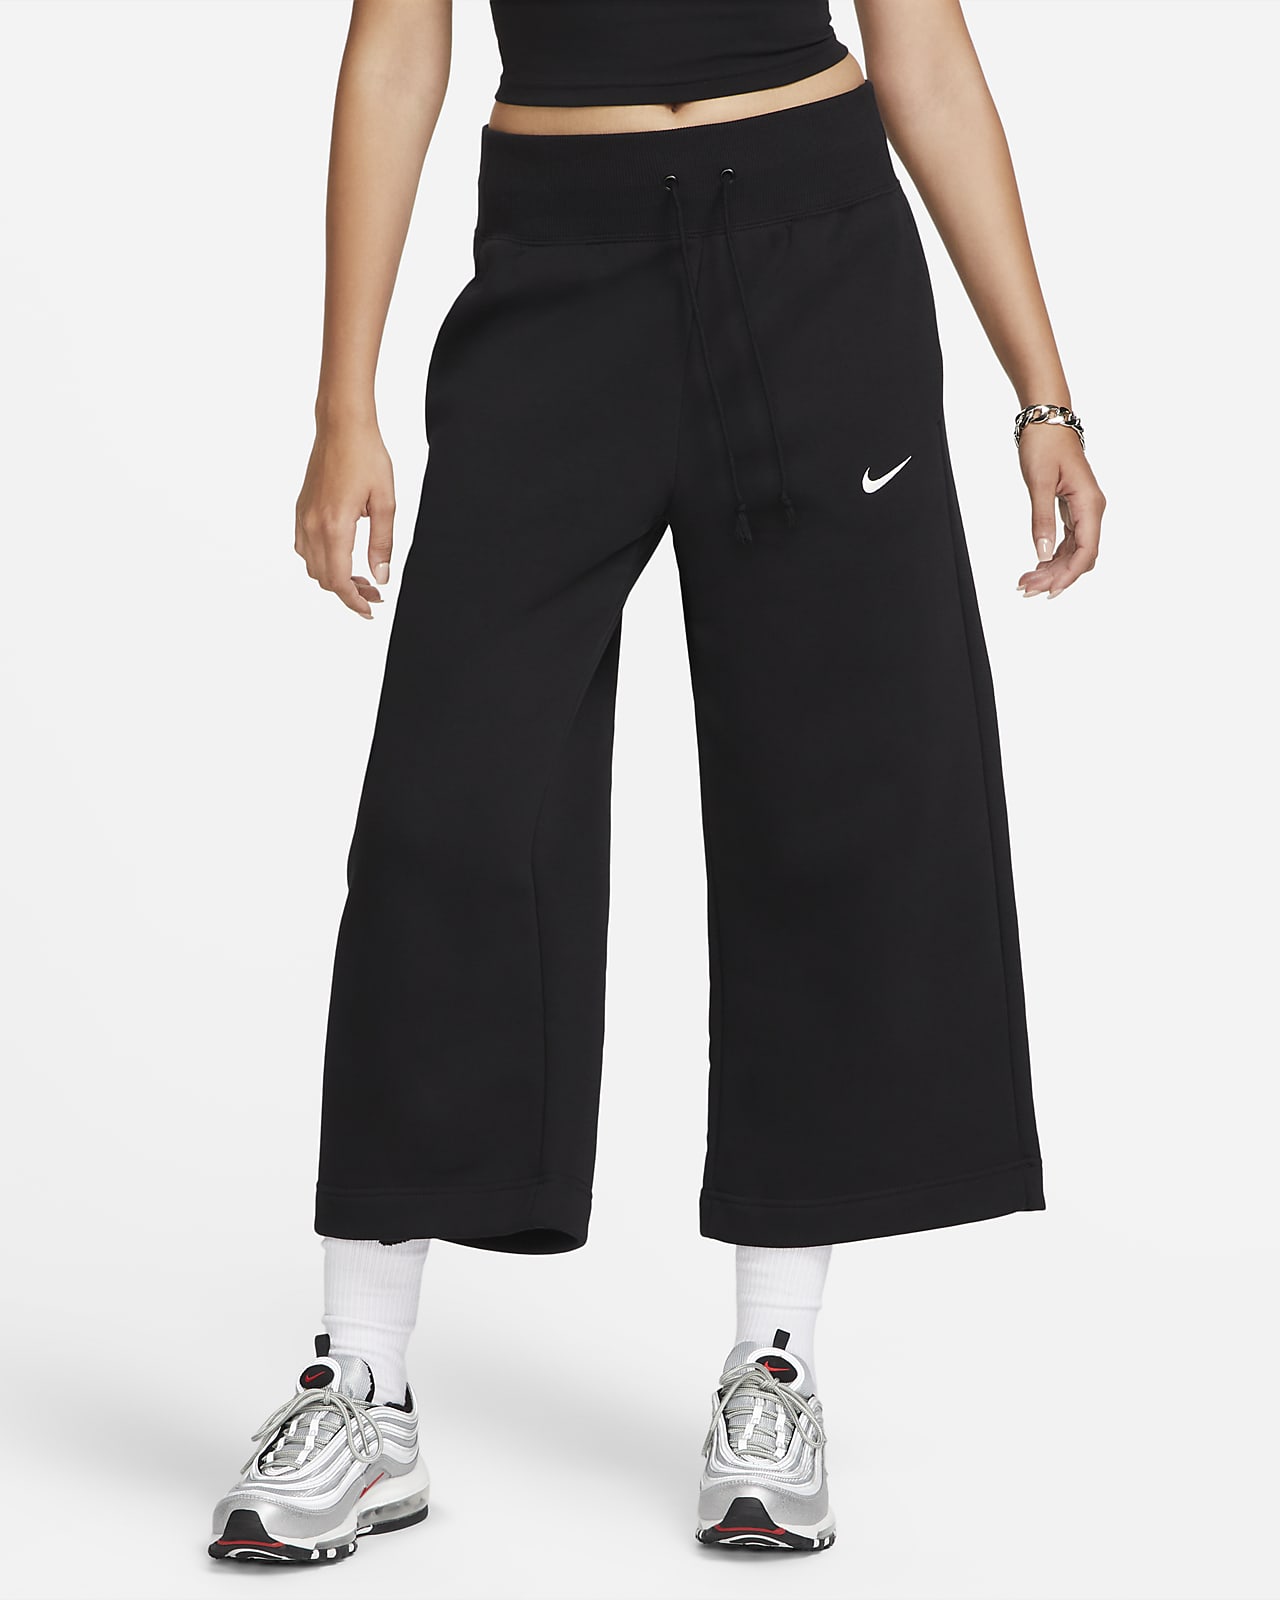 Nike Sportswear Phoenix Fleece verkürzte Trainingshose mit hohem Taillenbund für Damen